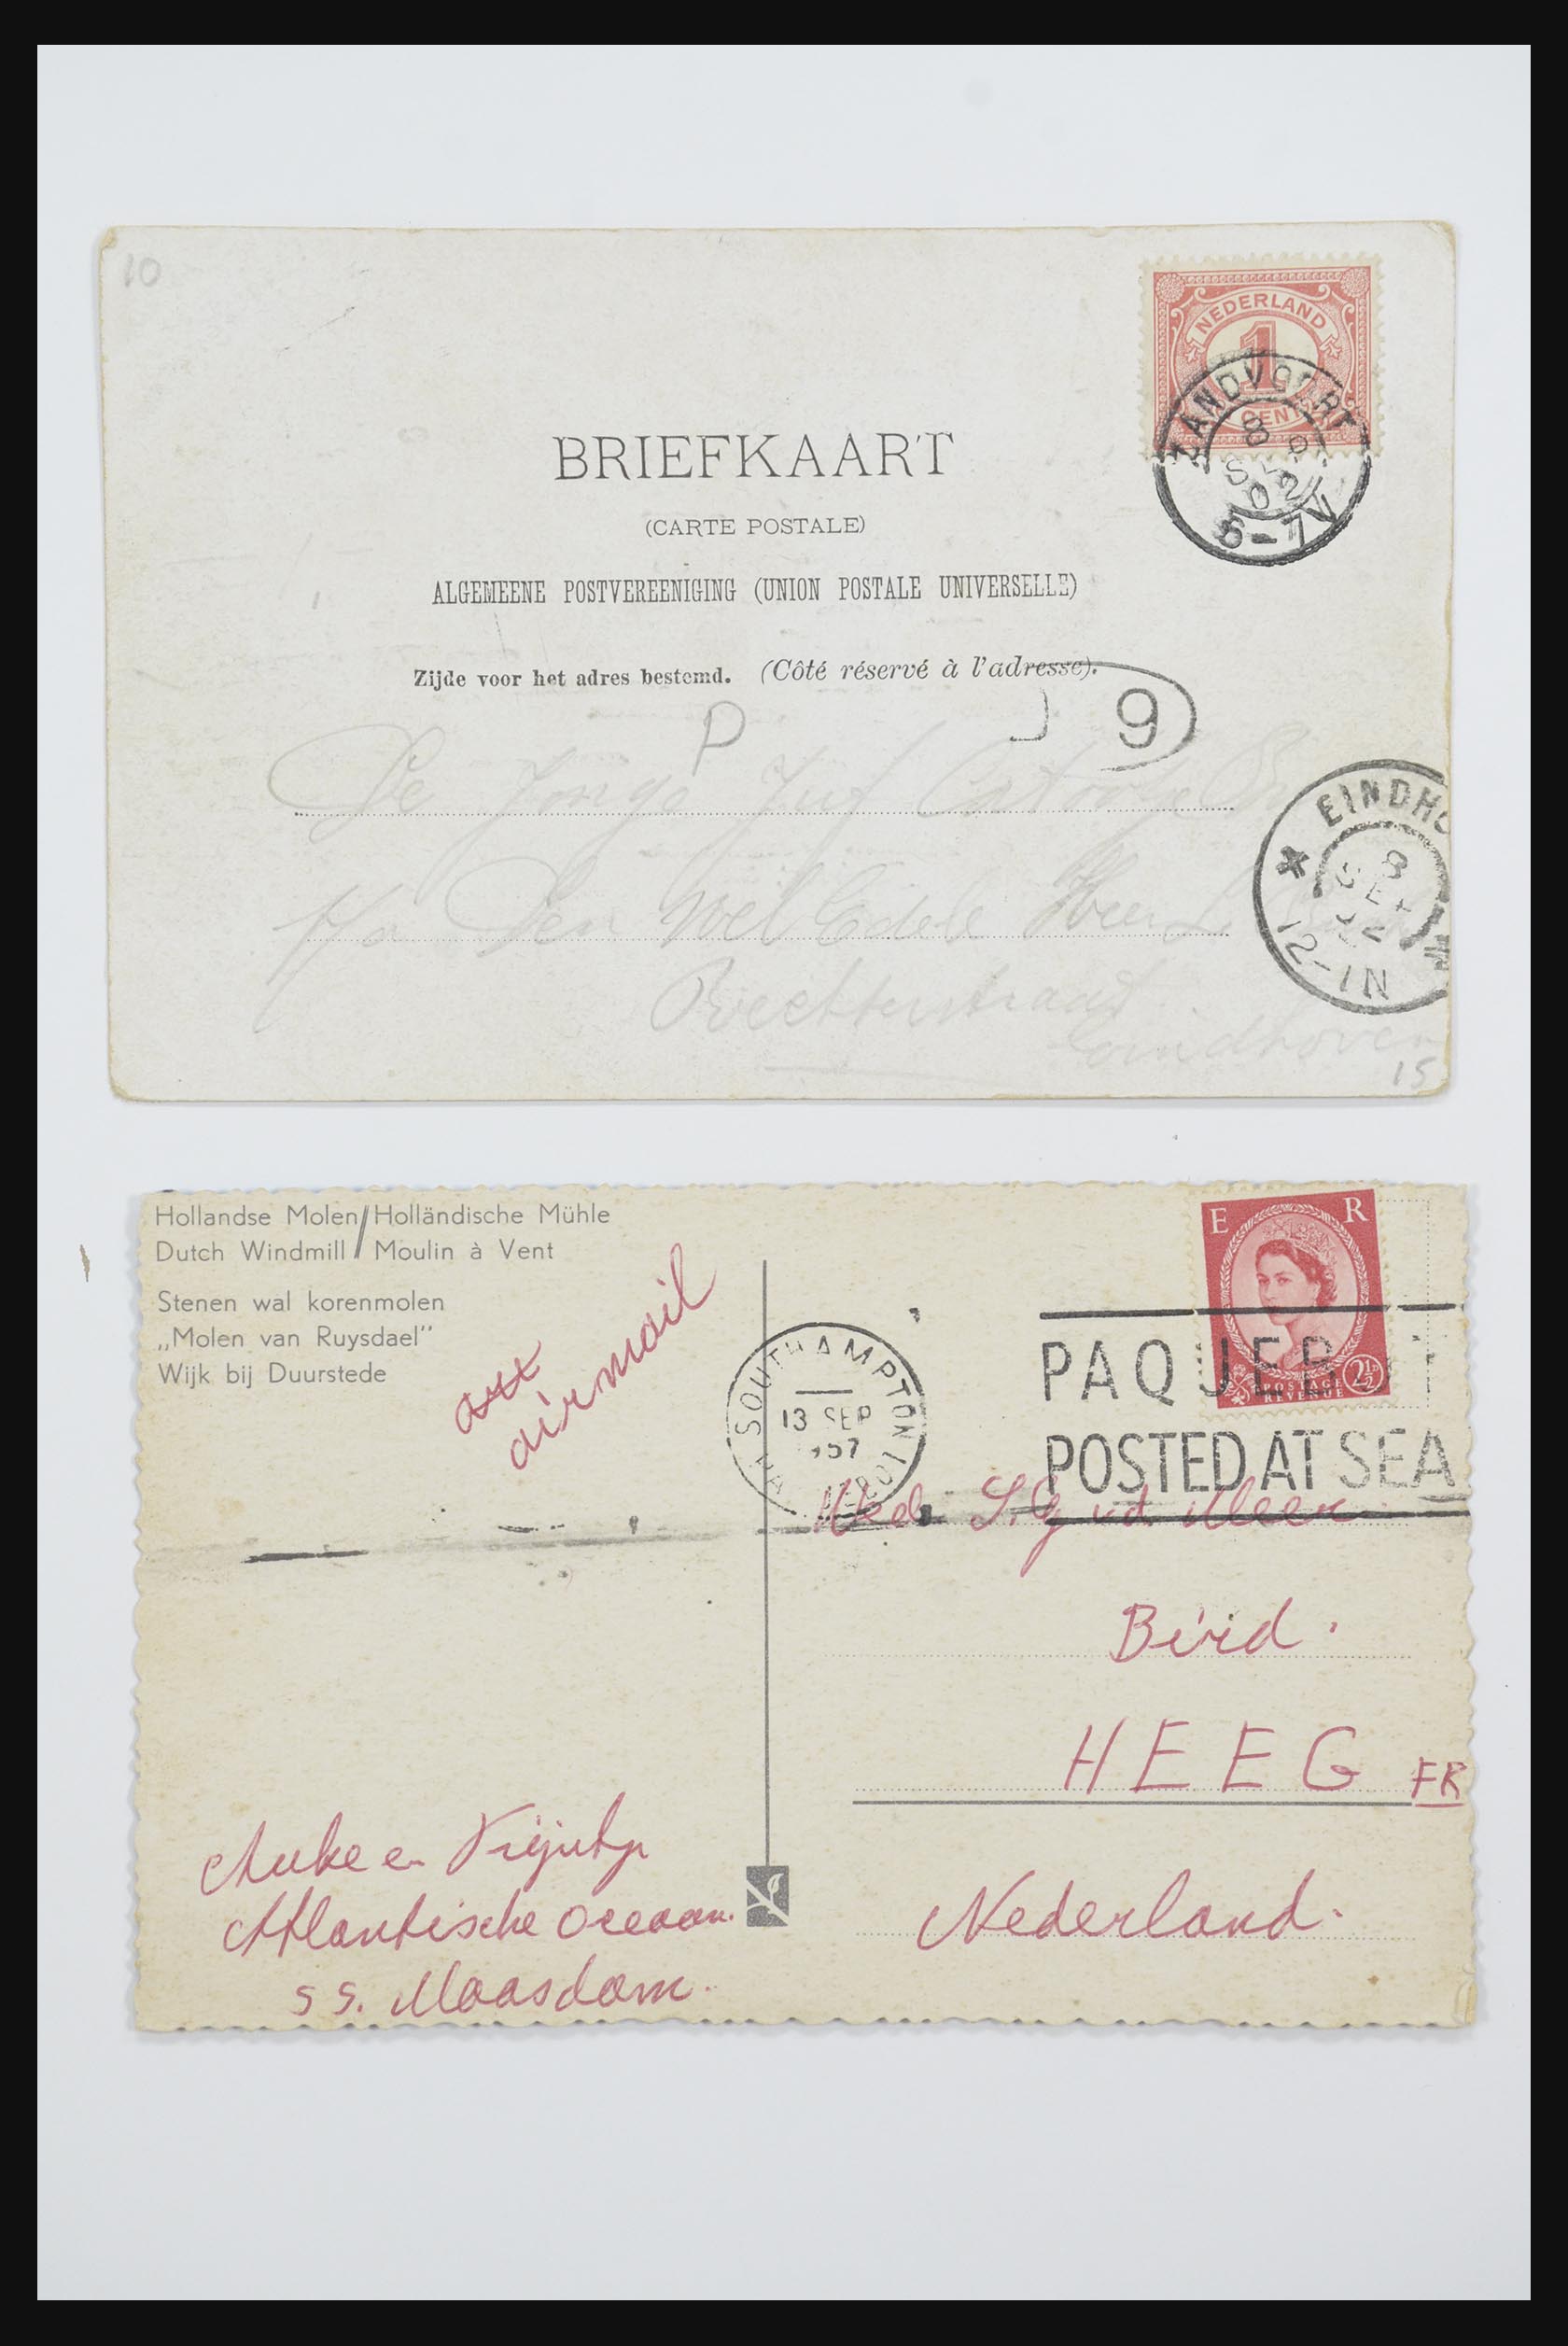 31668 031 - 31668 Nederland ansichtkaarten 1905-1935.